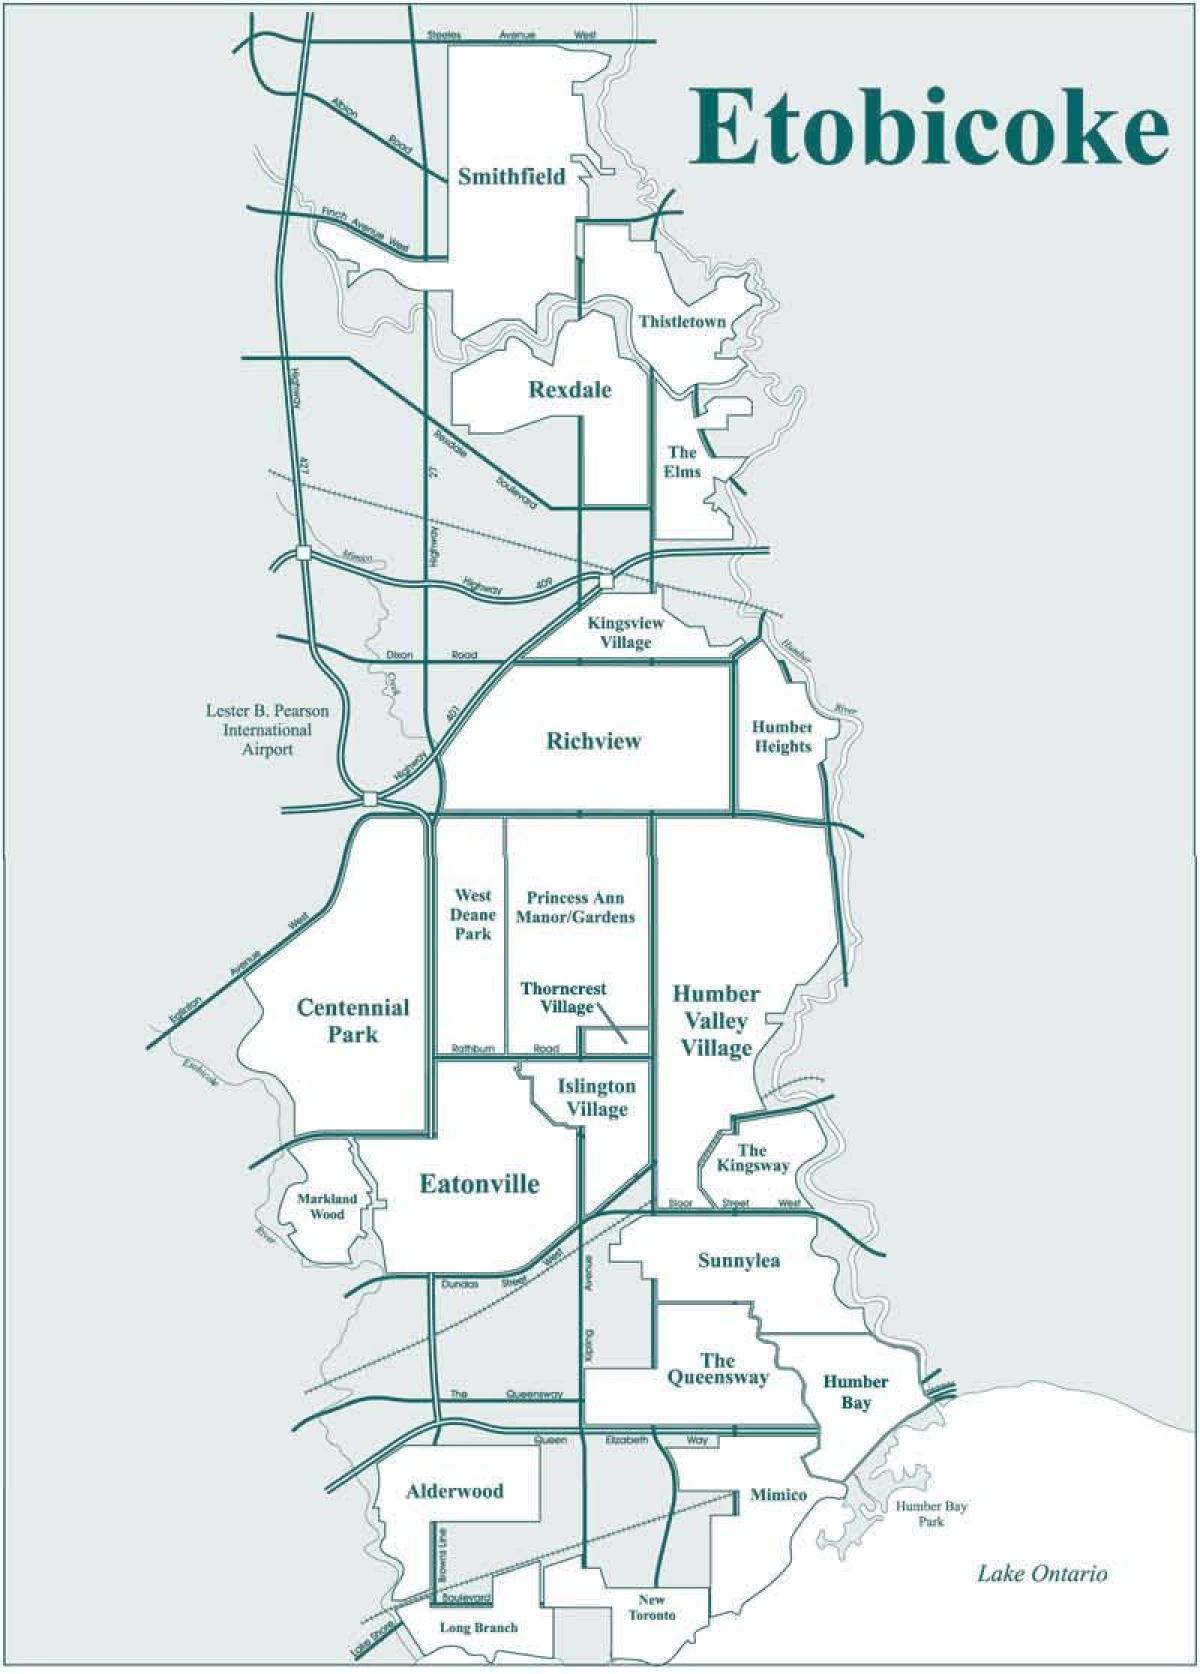 Peta Etobicoke kejiranan Toronto